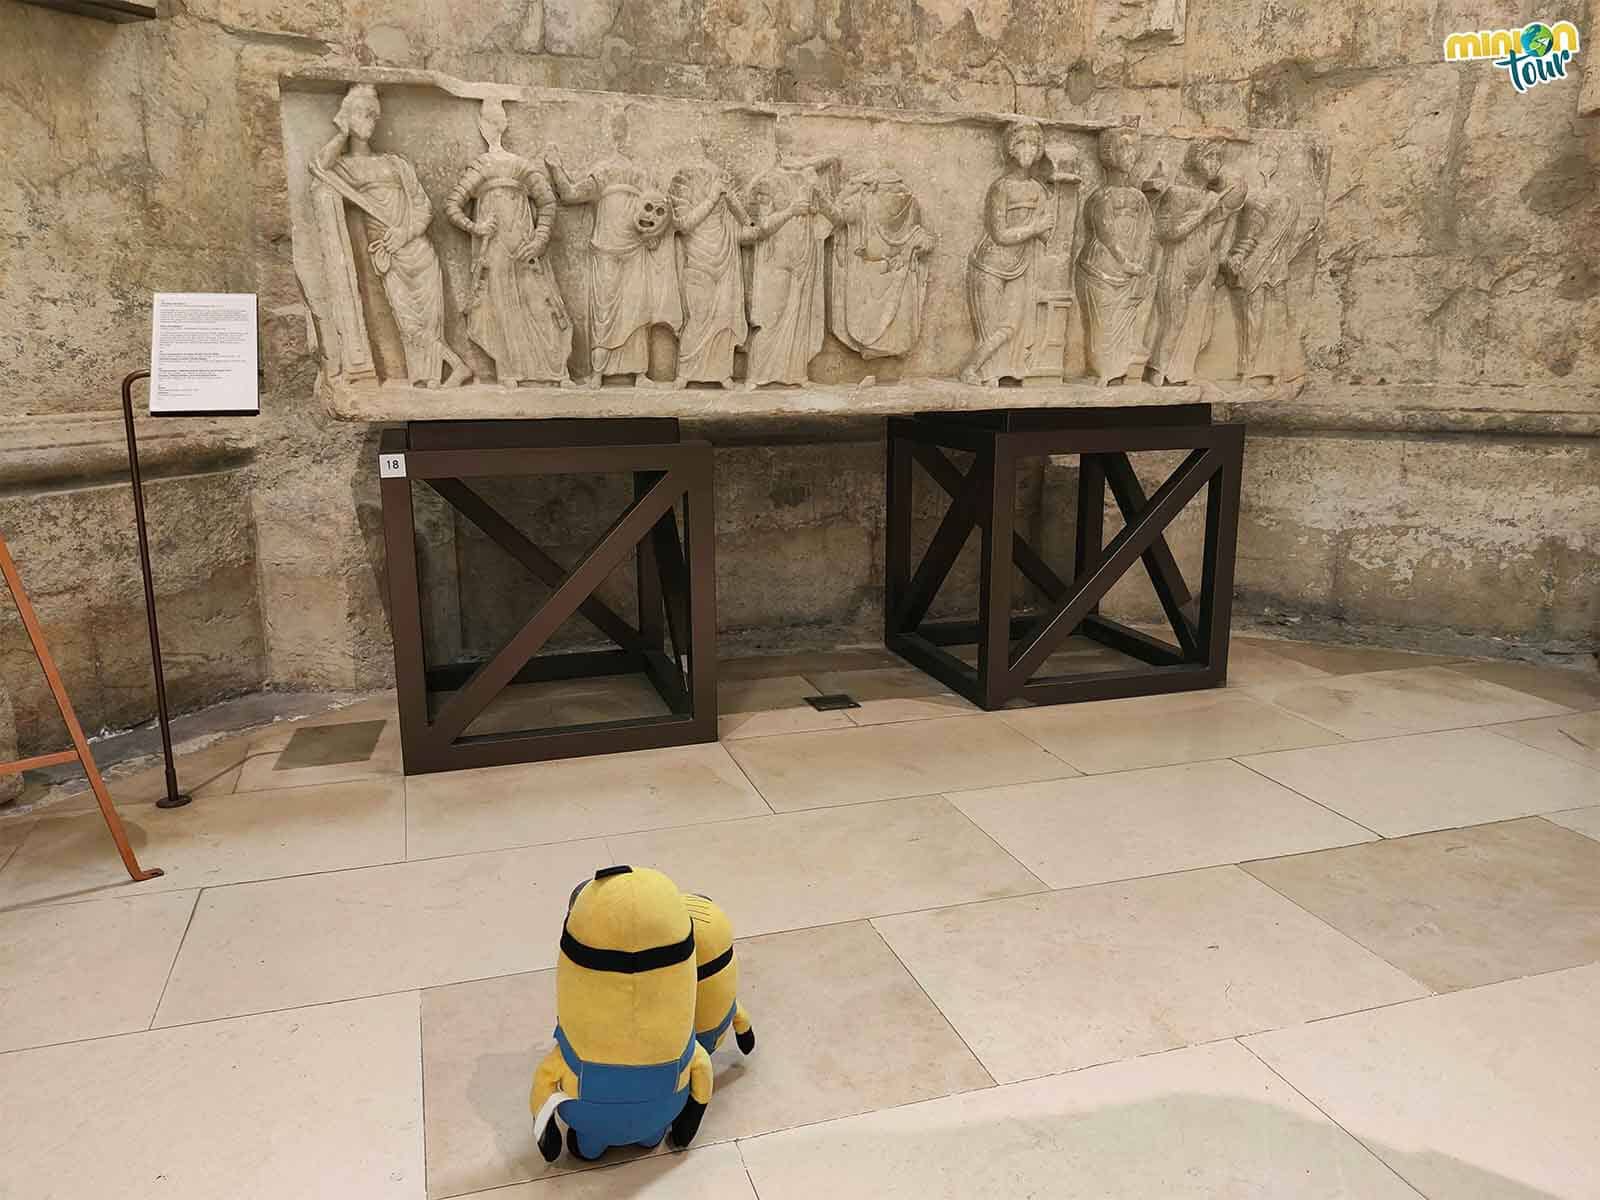 Este sarcófago es una de las piezas que tienes que ver en el Museo del Convento do Carmo de Lisboa